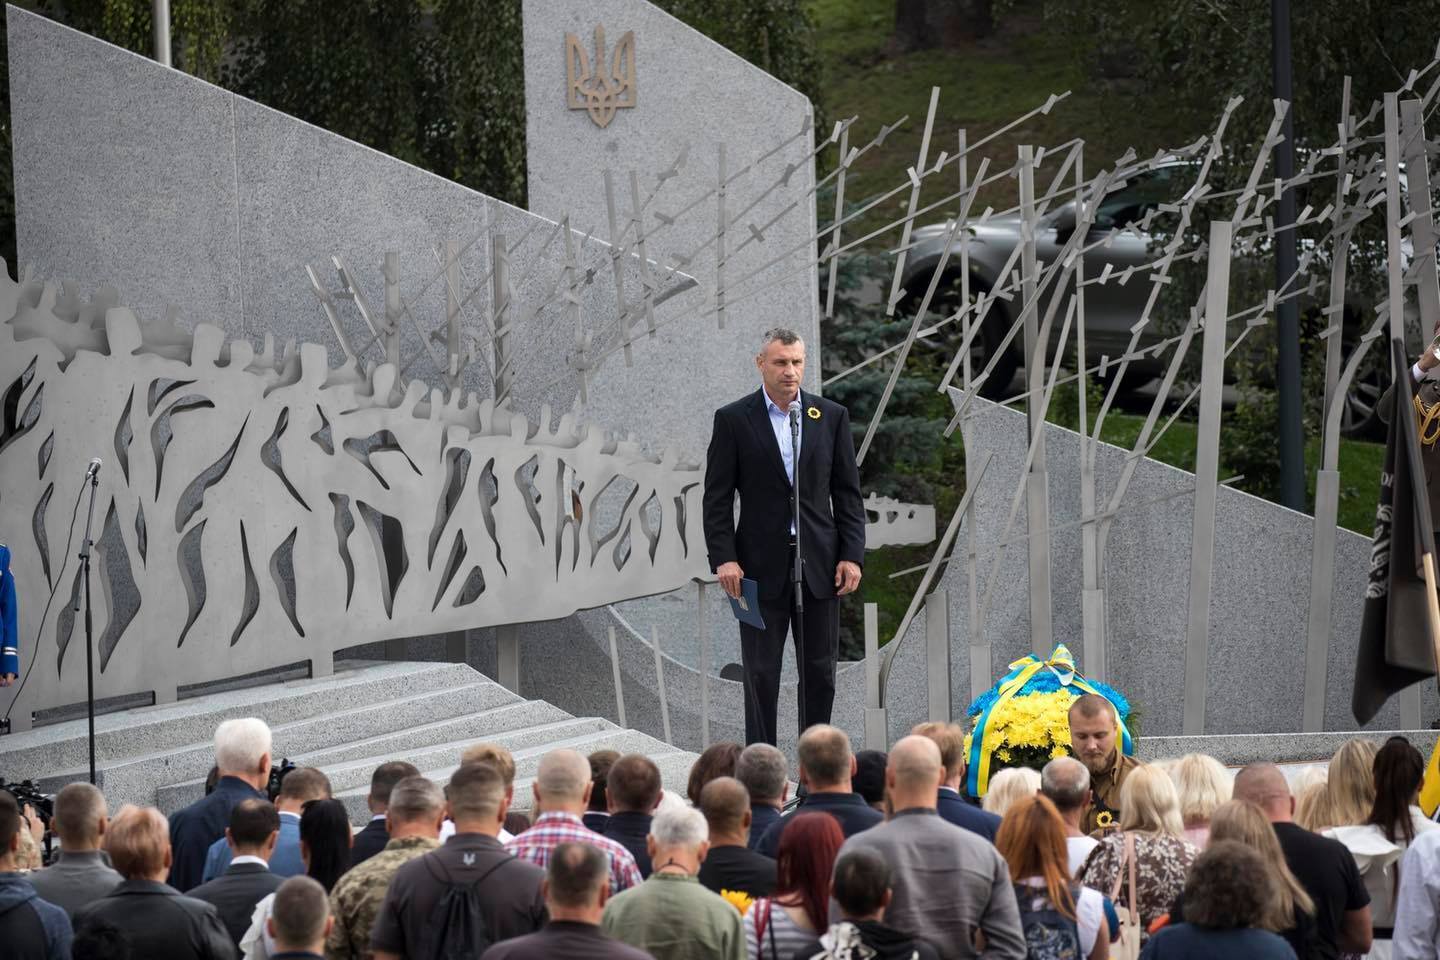 Кличко открыл в столице Мемориал памяти погибшим киевлянам-участникам АТО/ООС. Фото